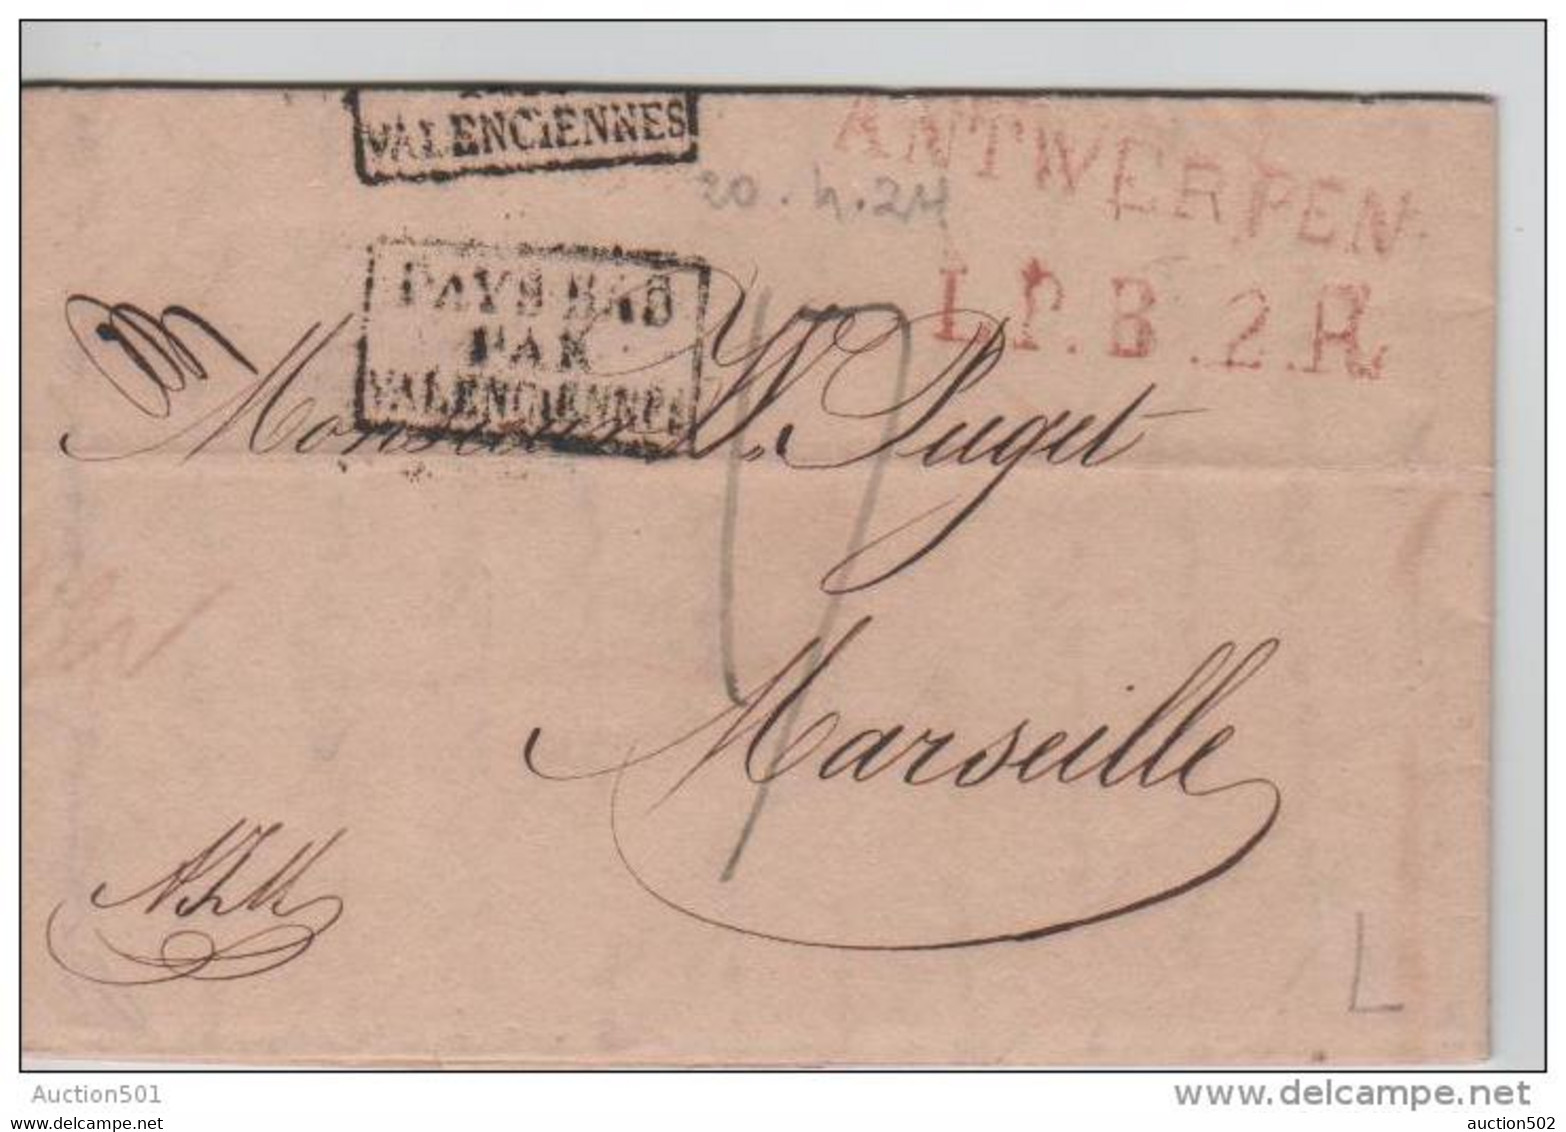 00746a Anvers 1824 Précurseur- Voorloper Antwerpen L.P.B.2.R 17 Déc. Gff Pays-Bas Par Valencienne V. Marseille - 1815-1830 (Hollandse Tijd)